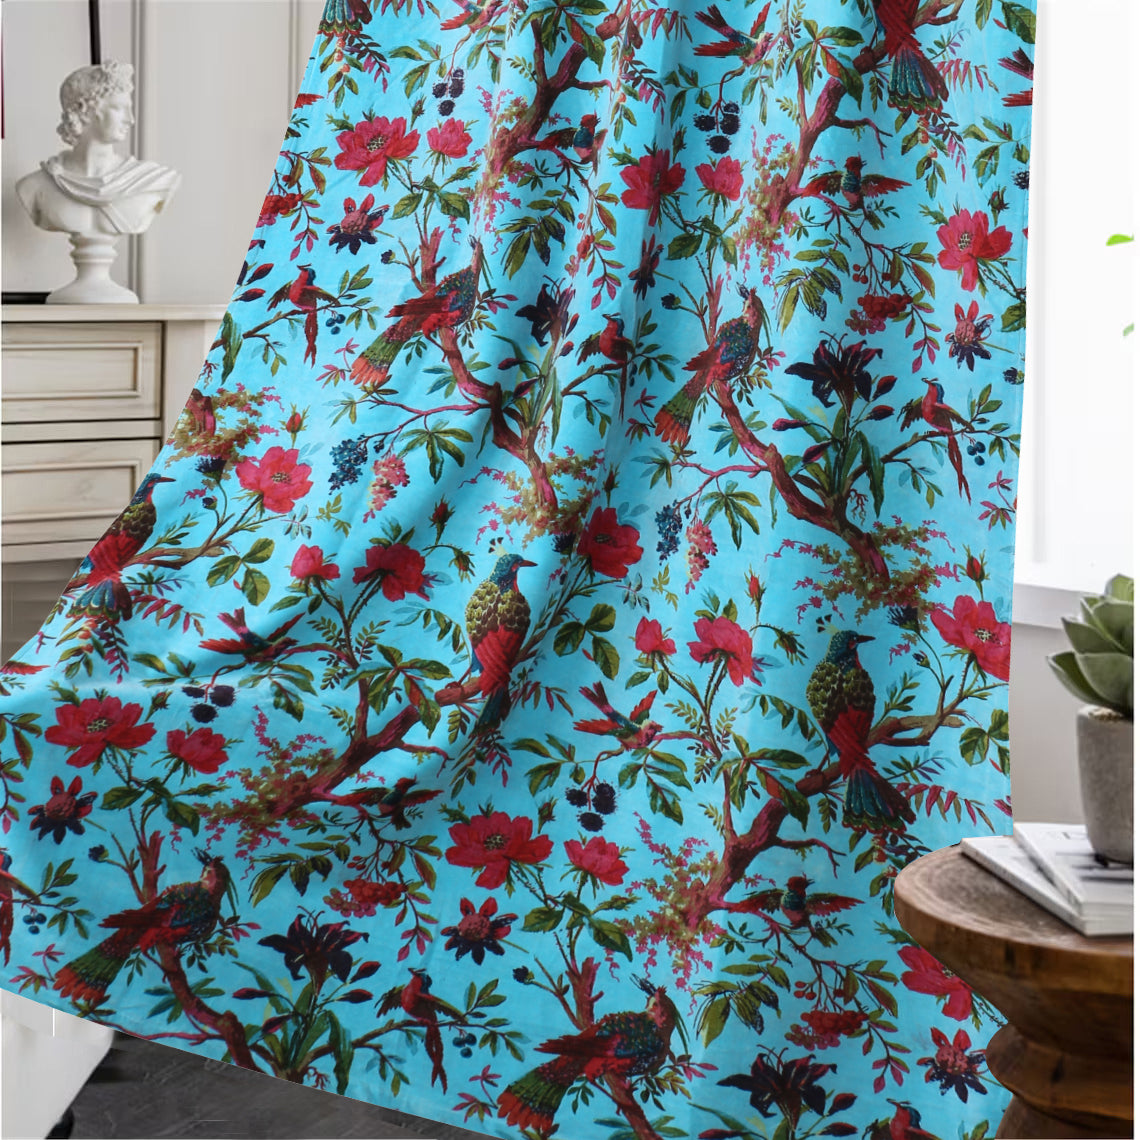 Birds of Paradise Velvet fabric for upholstery- Turquoise Blue